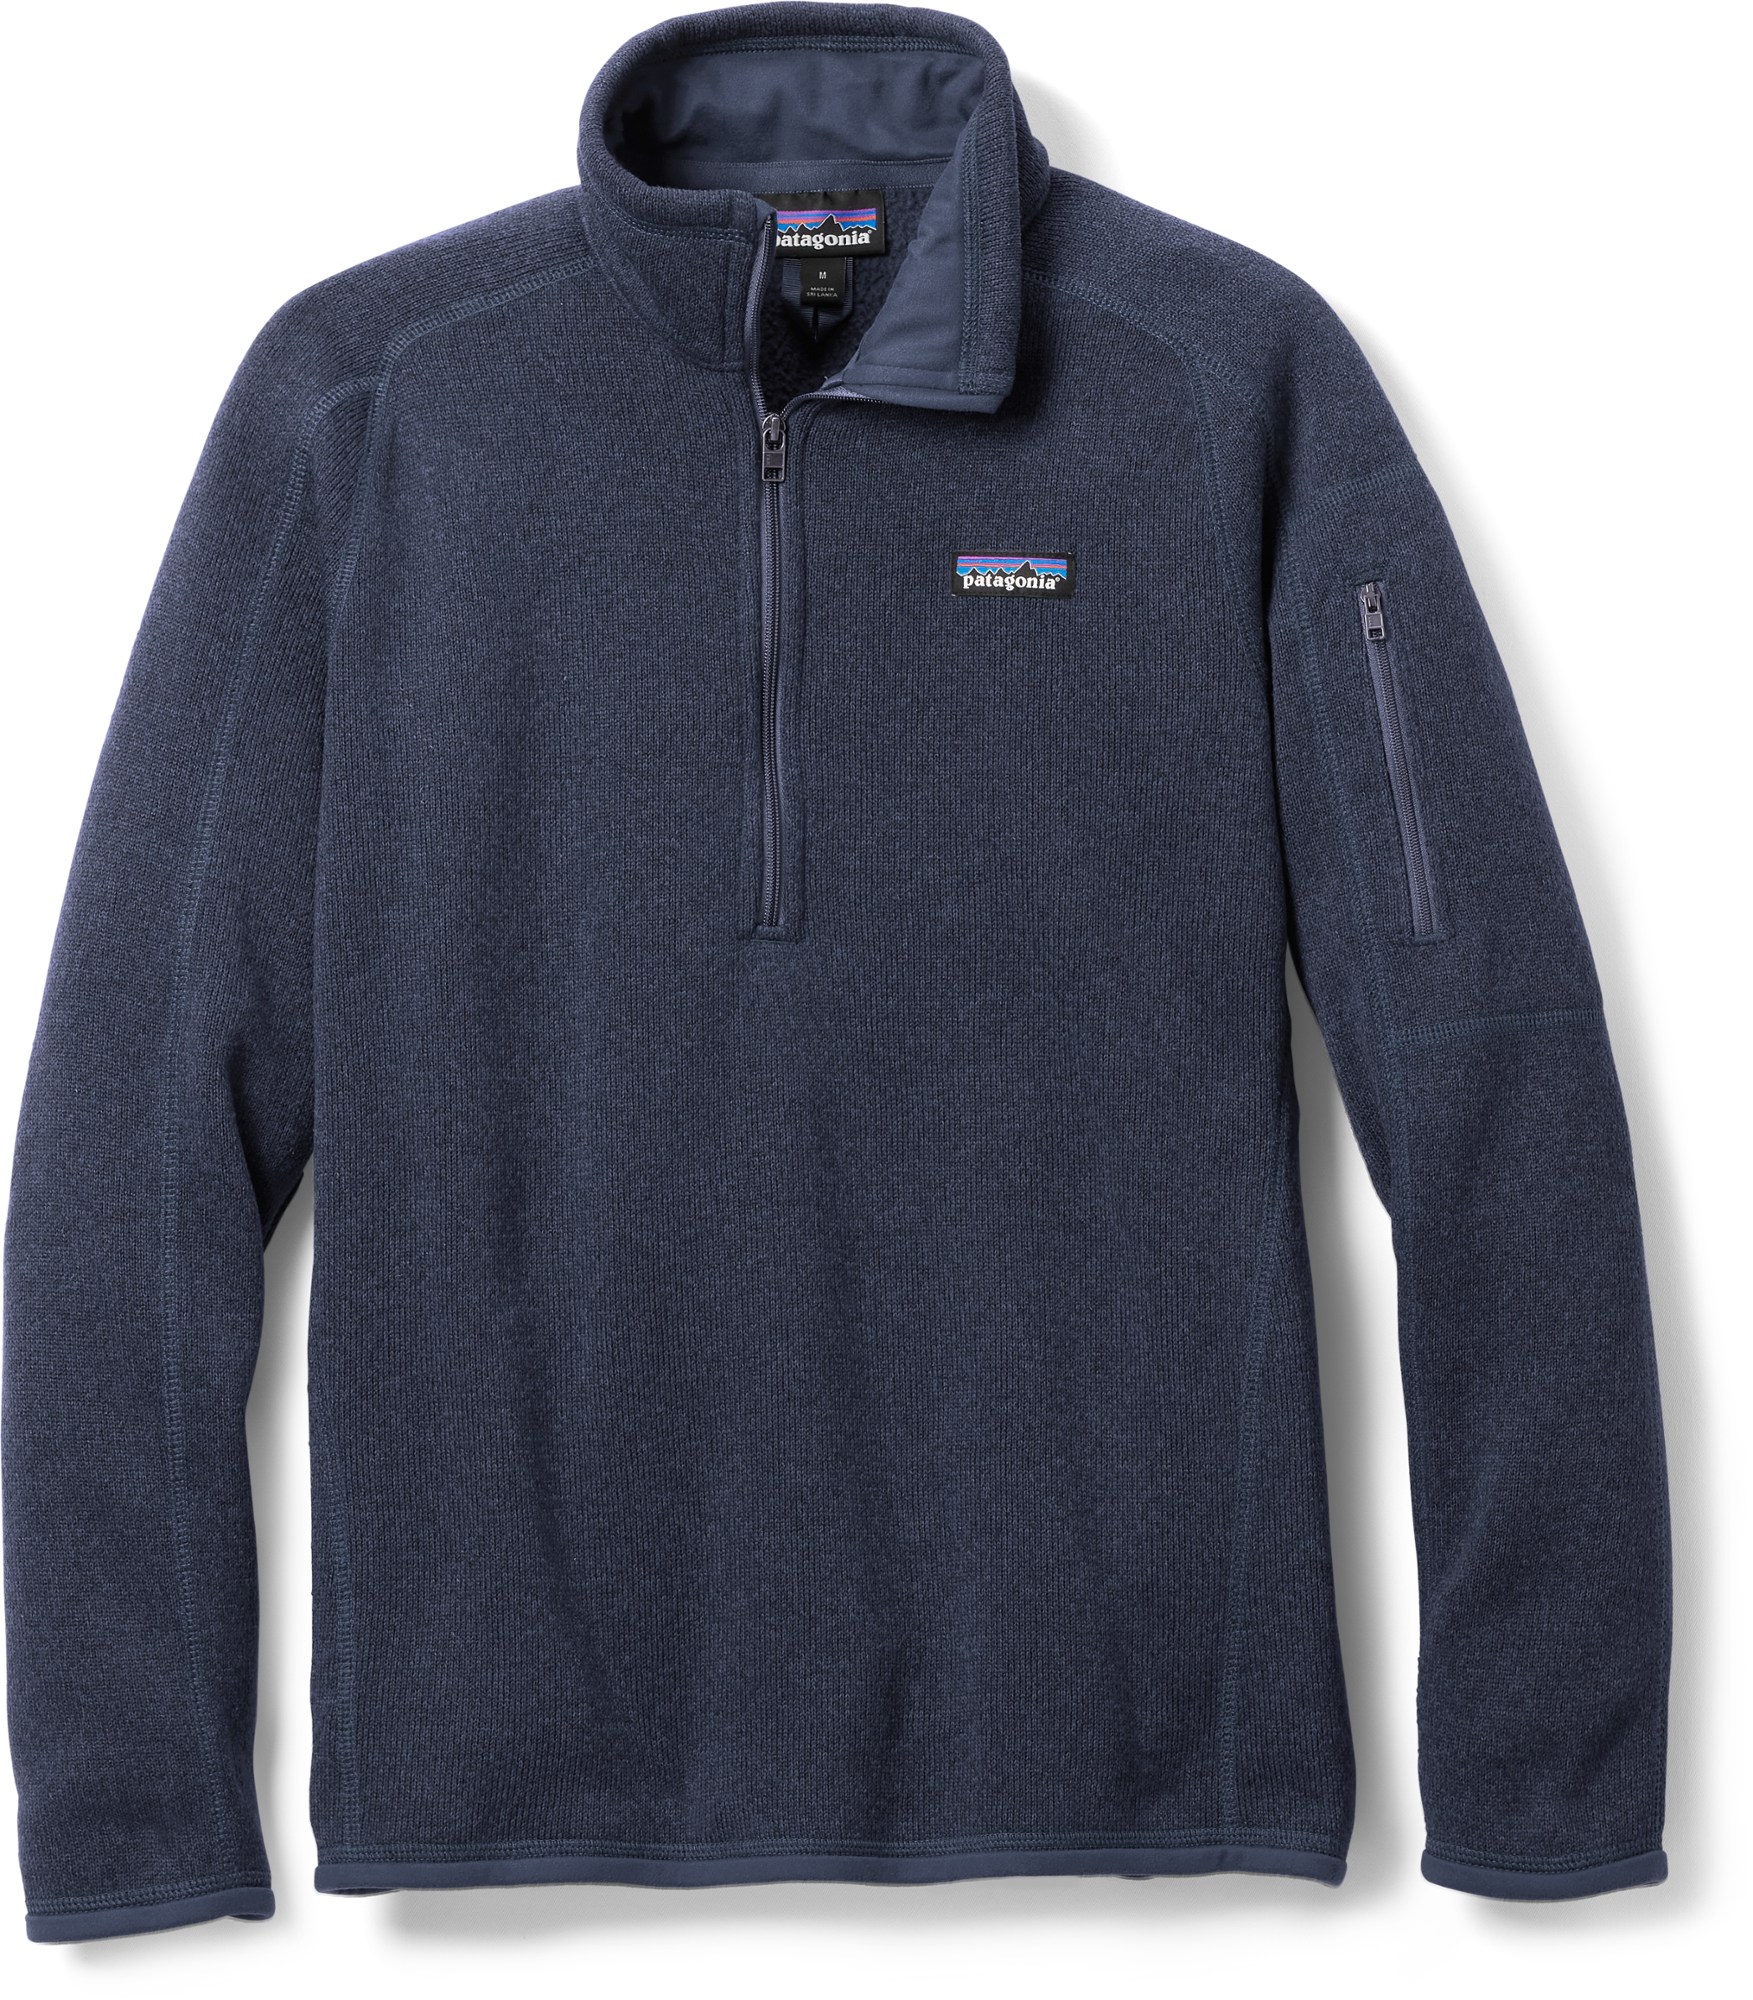 Флисовый пуловер Better Sweater с молнией в четверть — женский Patagonia, синий